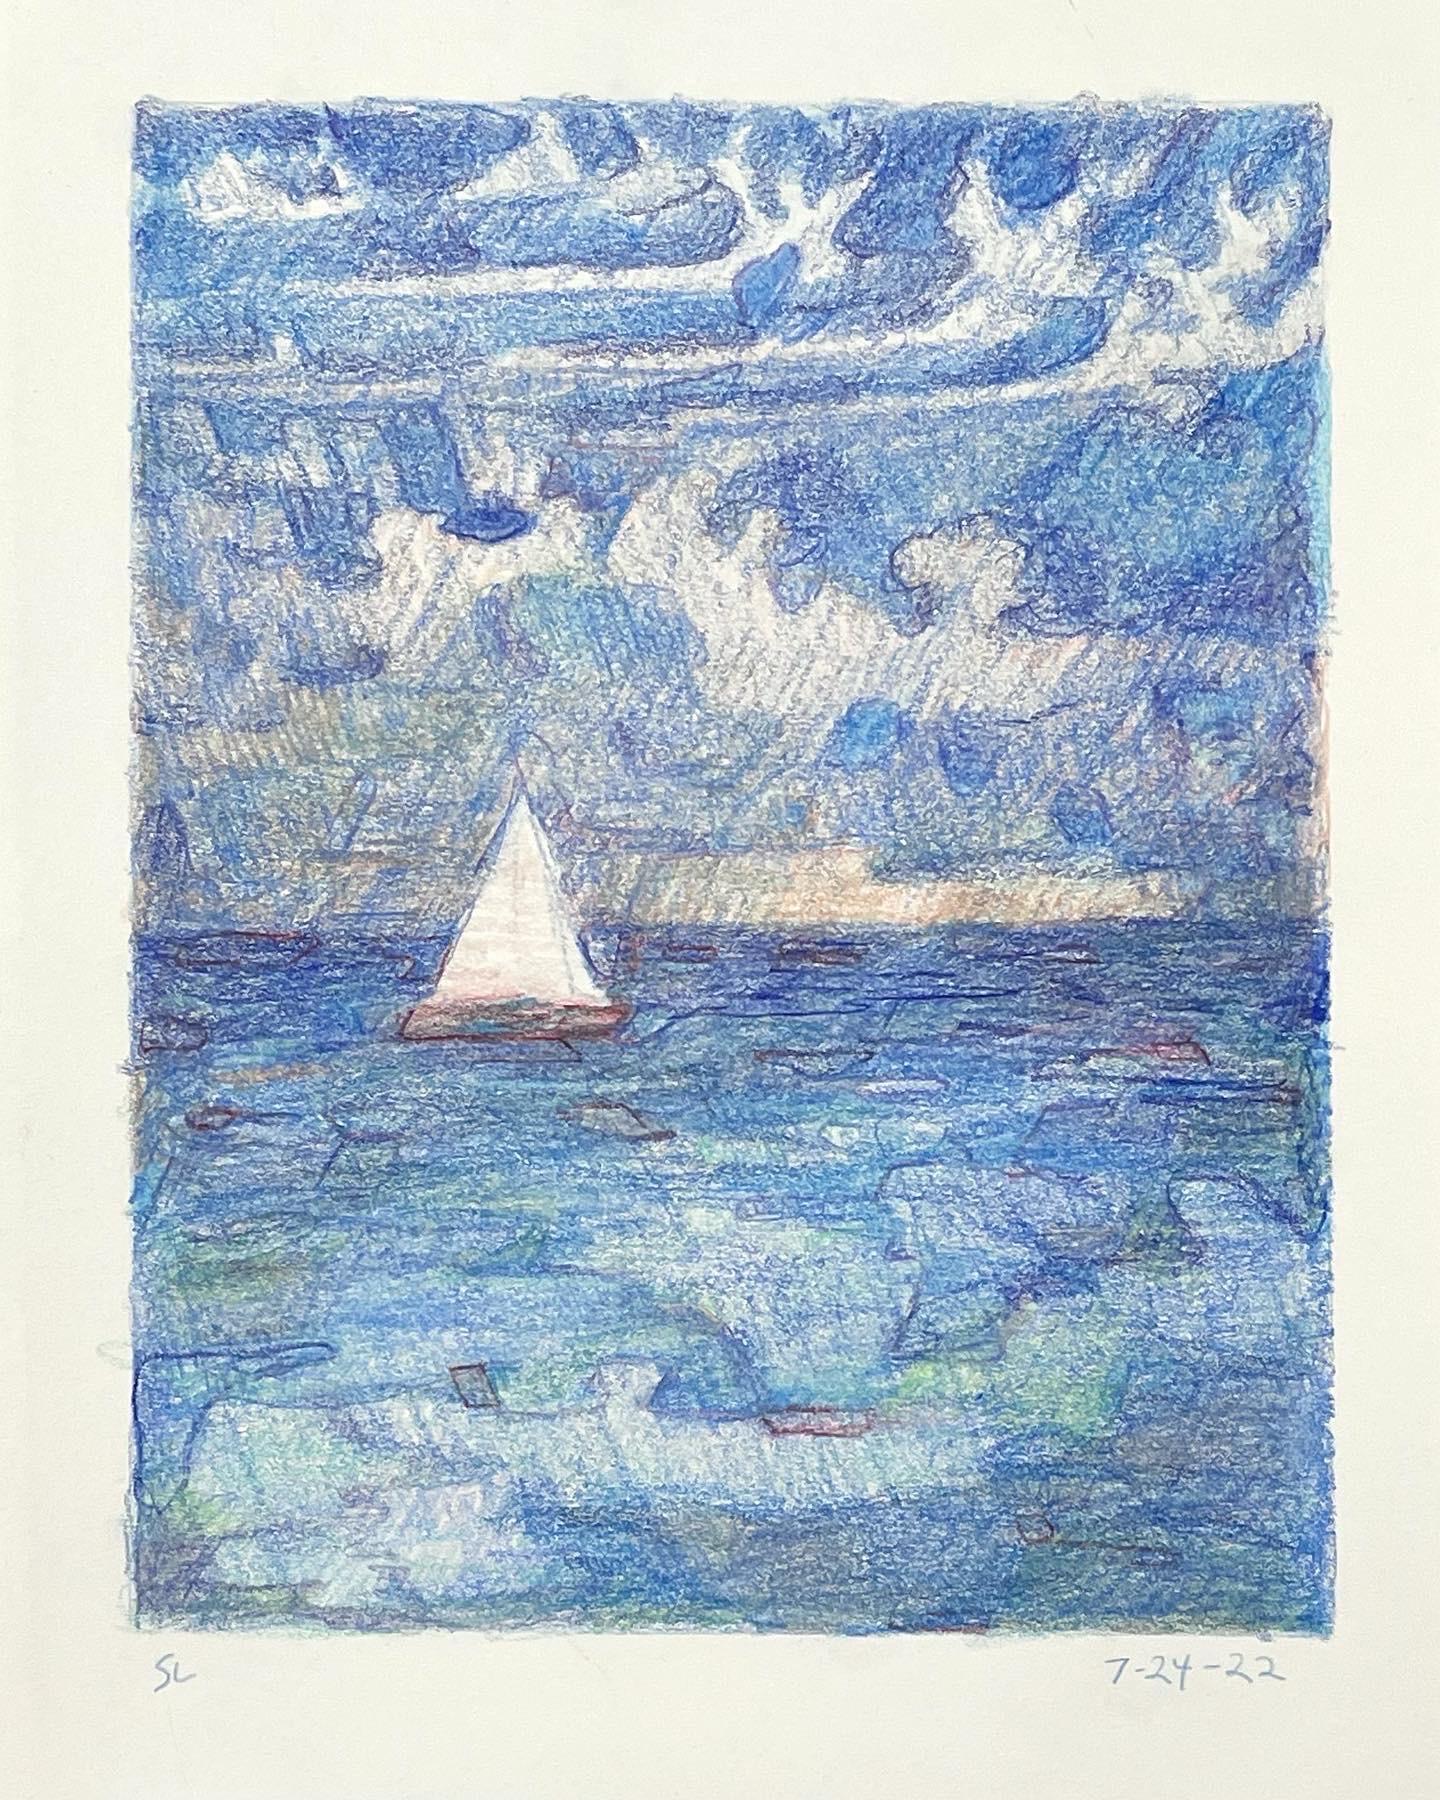 7-24-22, impressionistische, abstrahierte Landschaftszeichnung mit farbigem Bleistift